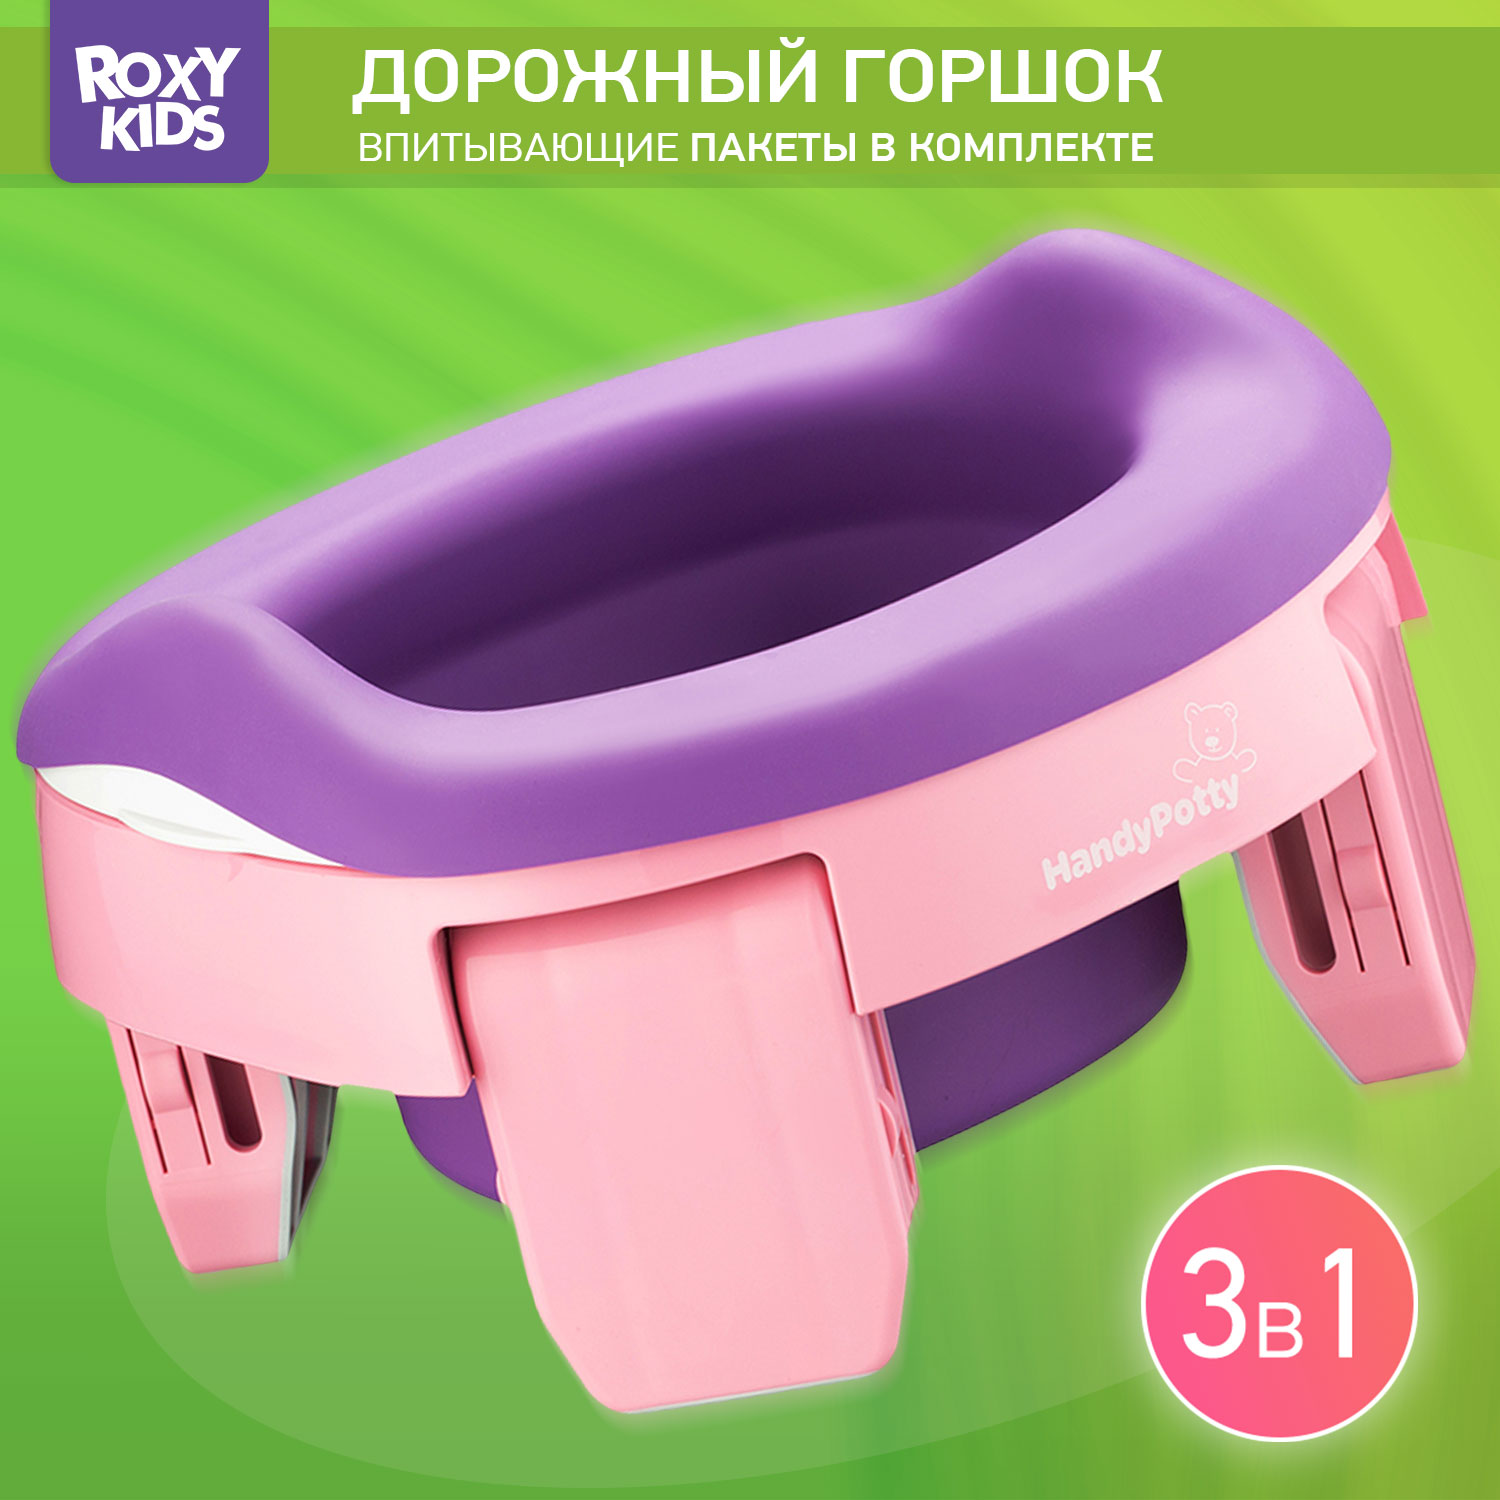 Горшок дорожный ROXY-KIDS складной HandyPotty 3 в 1 цвет розовый/фиолетовый - фото 1